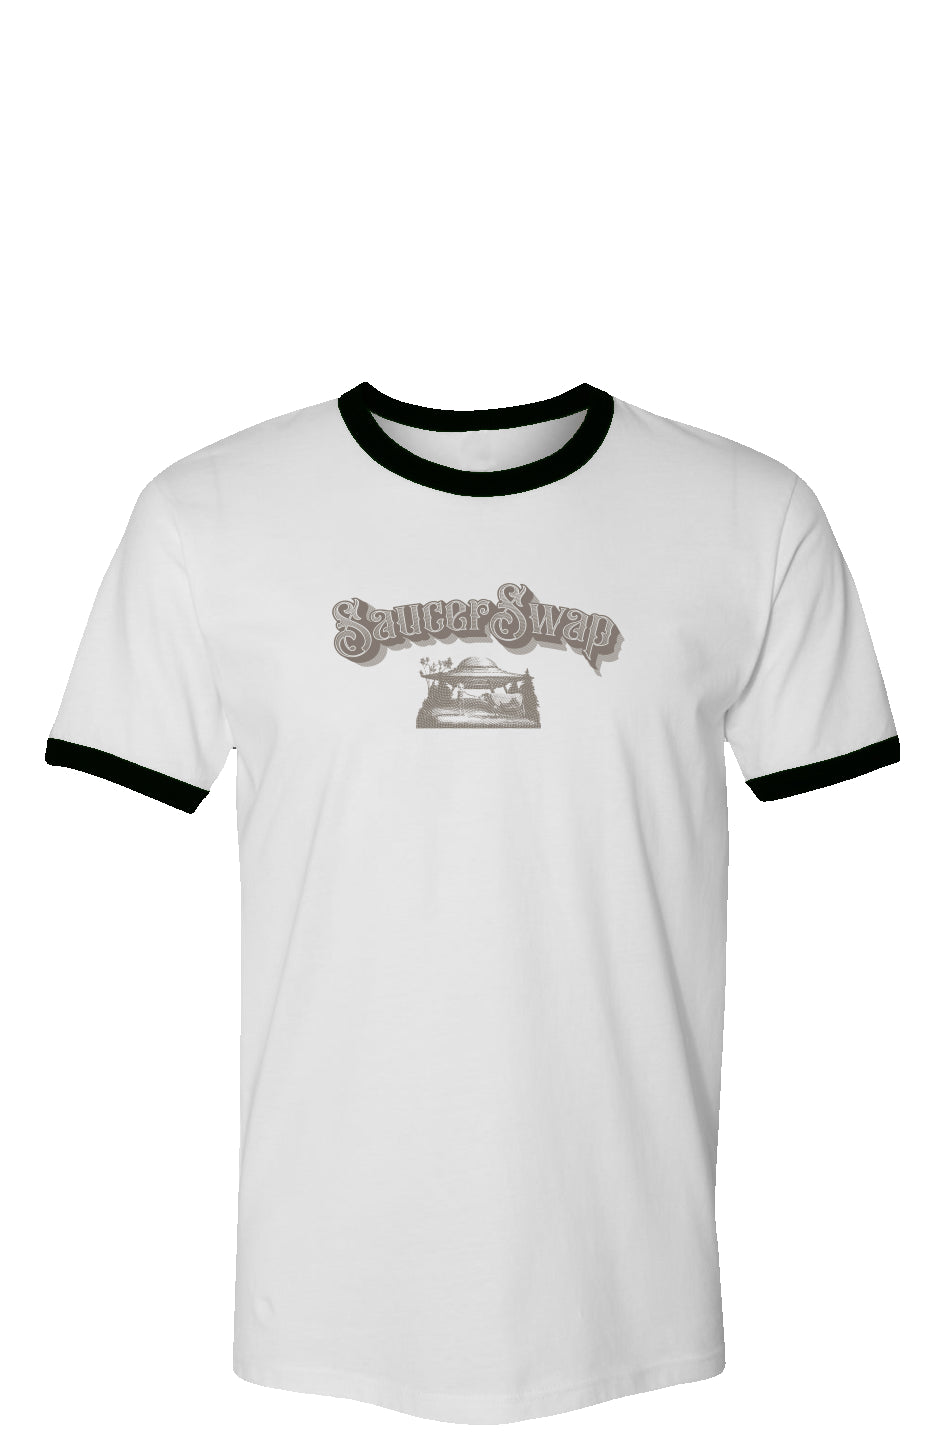 Ole SaucerSwap Vintage Ringer T-Shirt